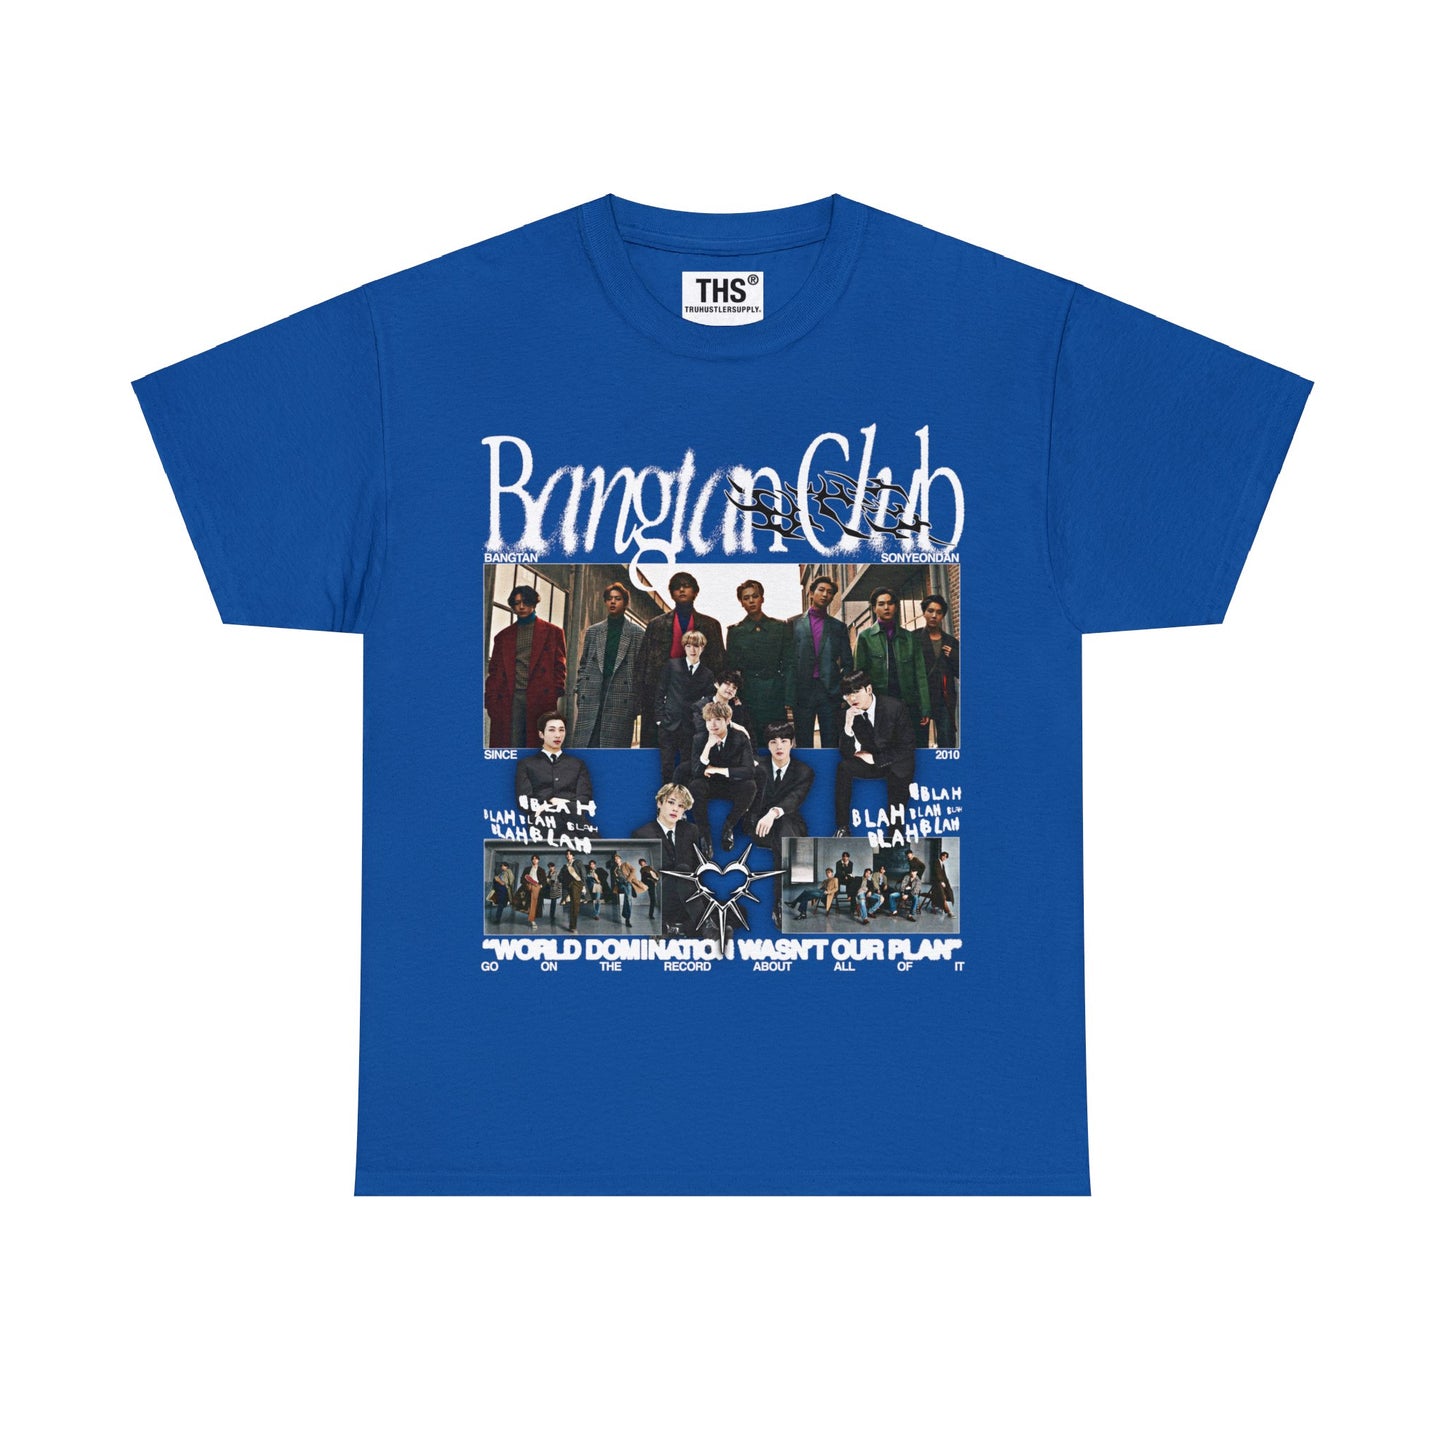 Bangtan Club BTS Y2K Graphic T Shirt